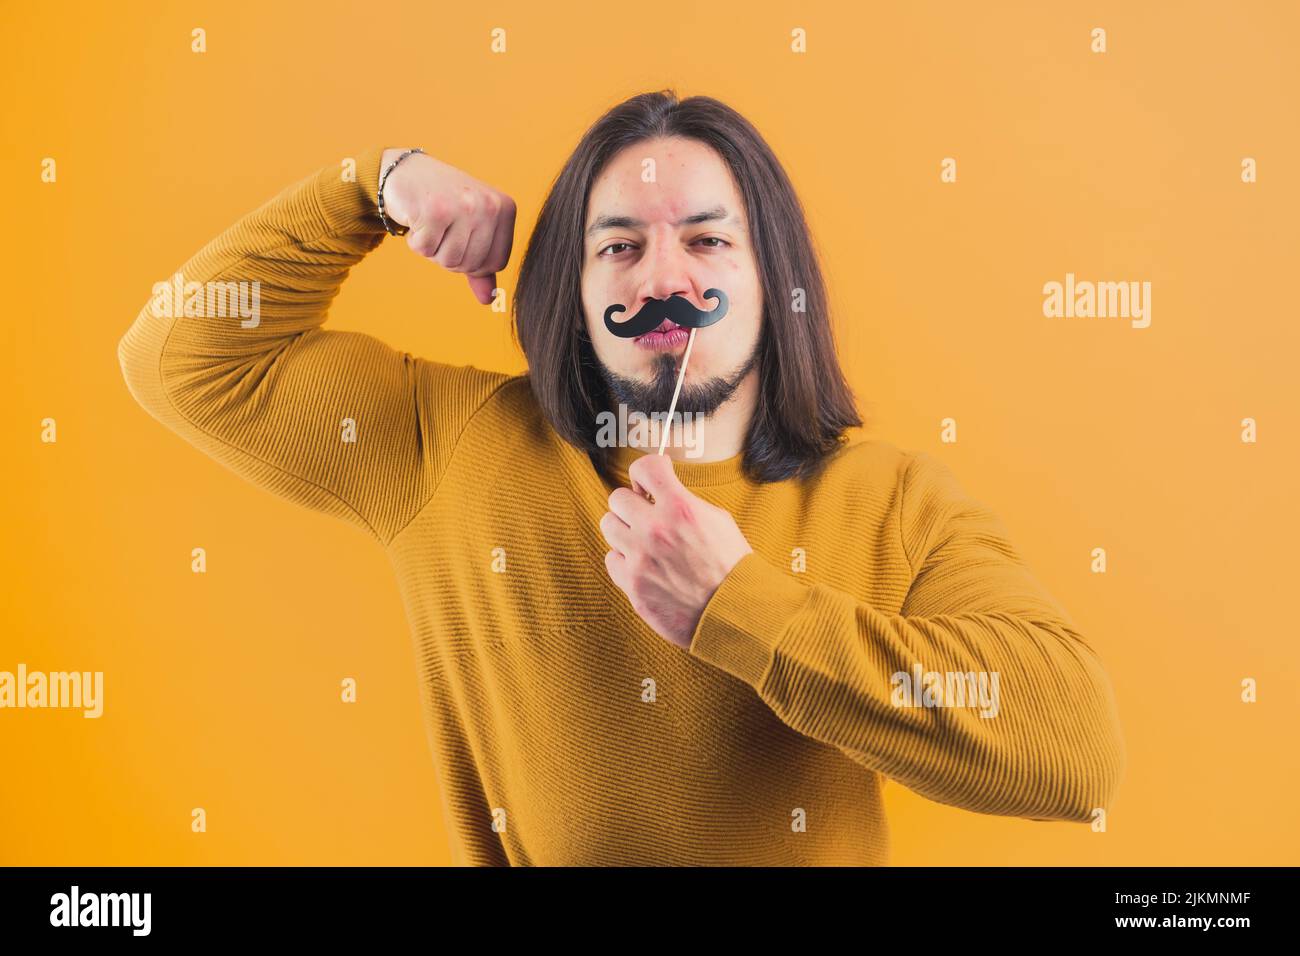 Beau garçon hispanique à la barbe, accroché à la moustache en papier et aux muscles serrés sur fond jaune dans un studio. Photo de haute qualité Banque D'Images